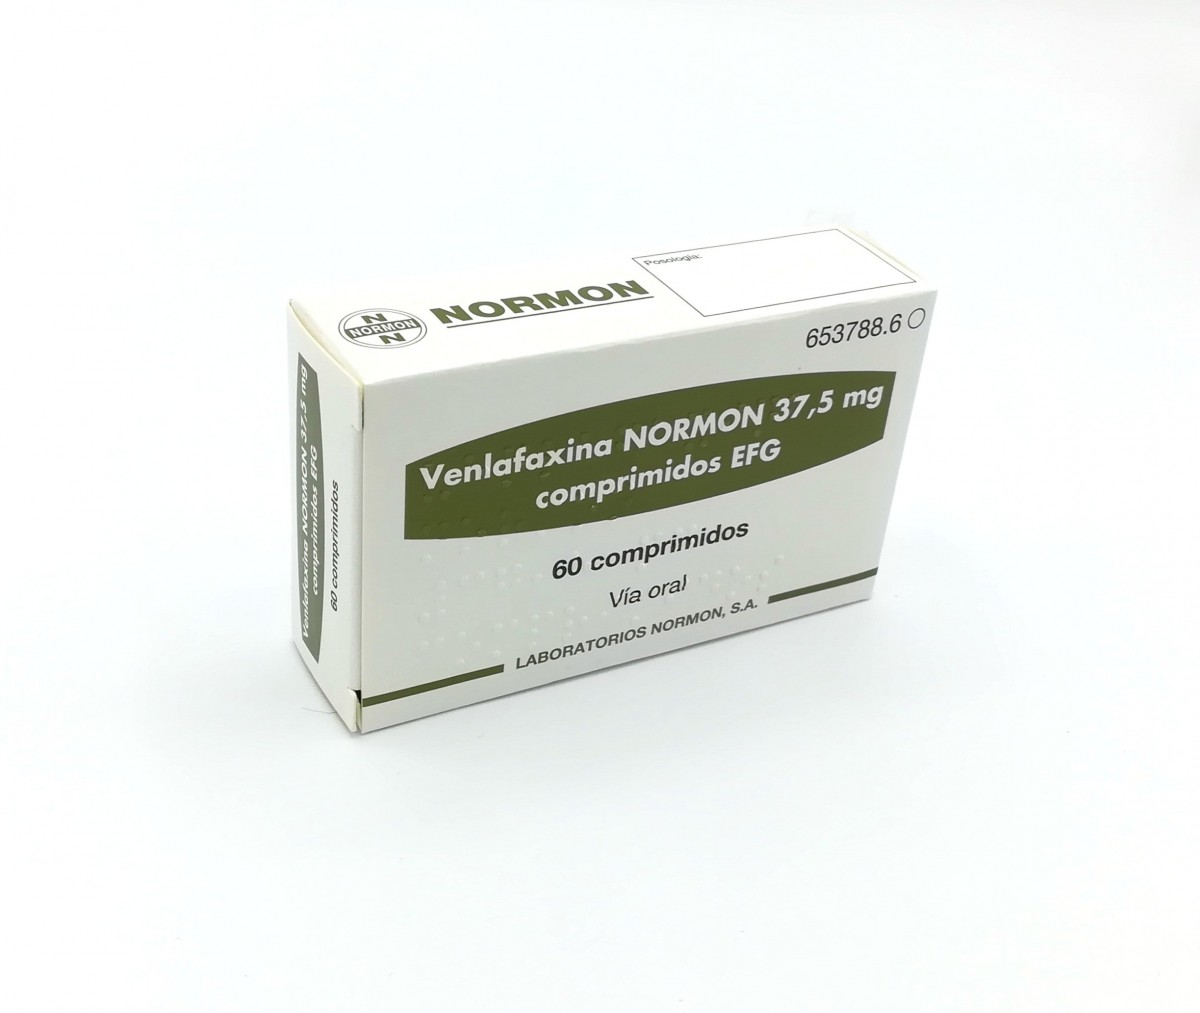 VENLAFAXINA NORMON 37,5 mg COMPRIMIDOS EFG , 60 comprimidos fotografía del envase.